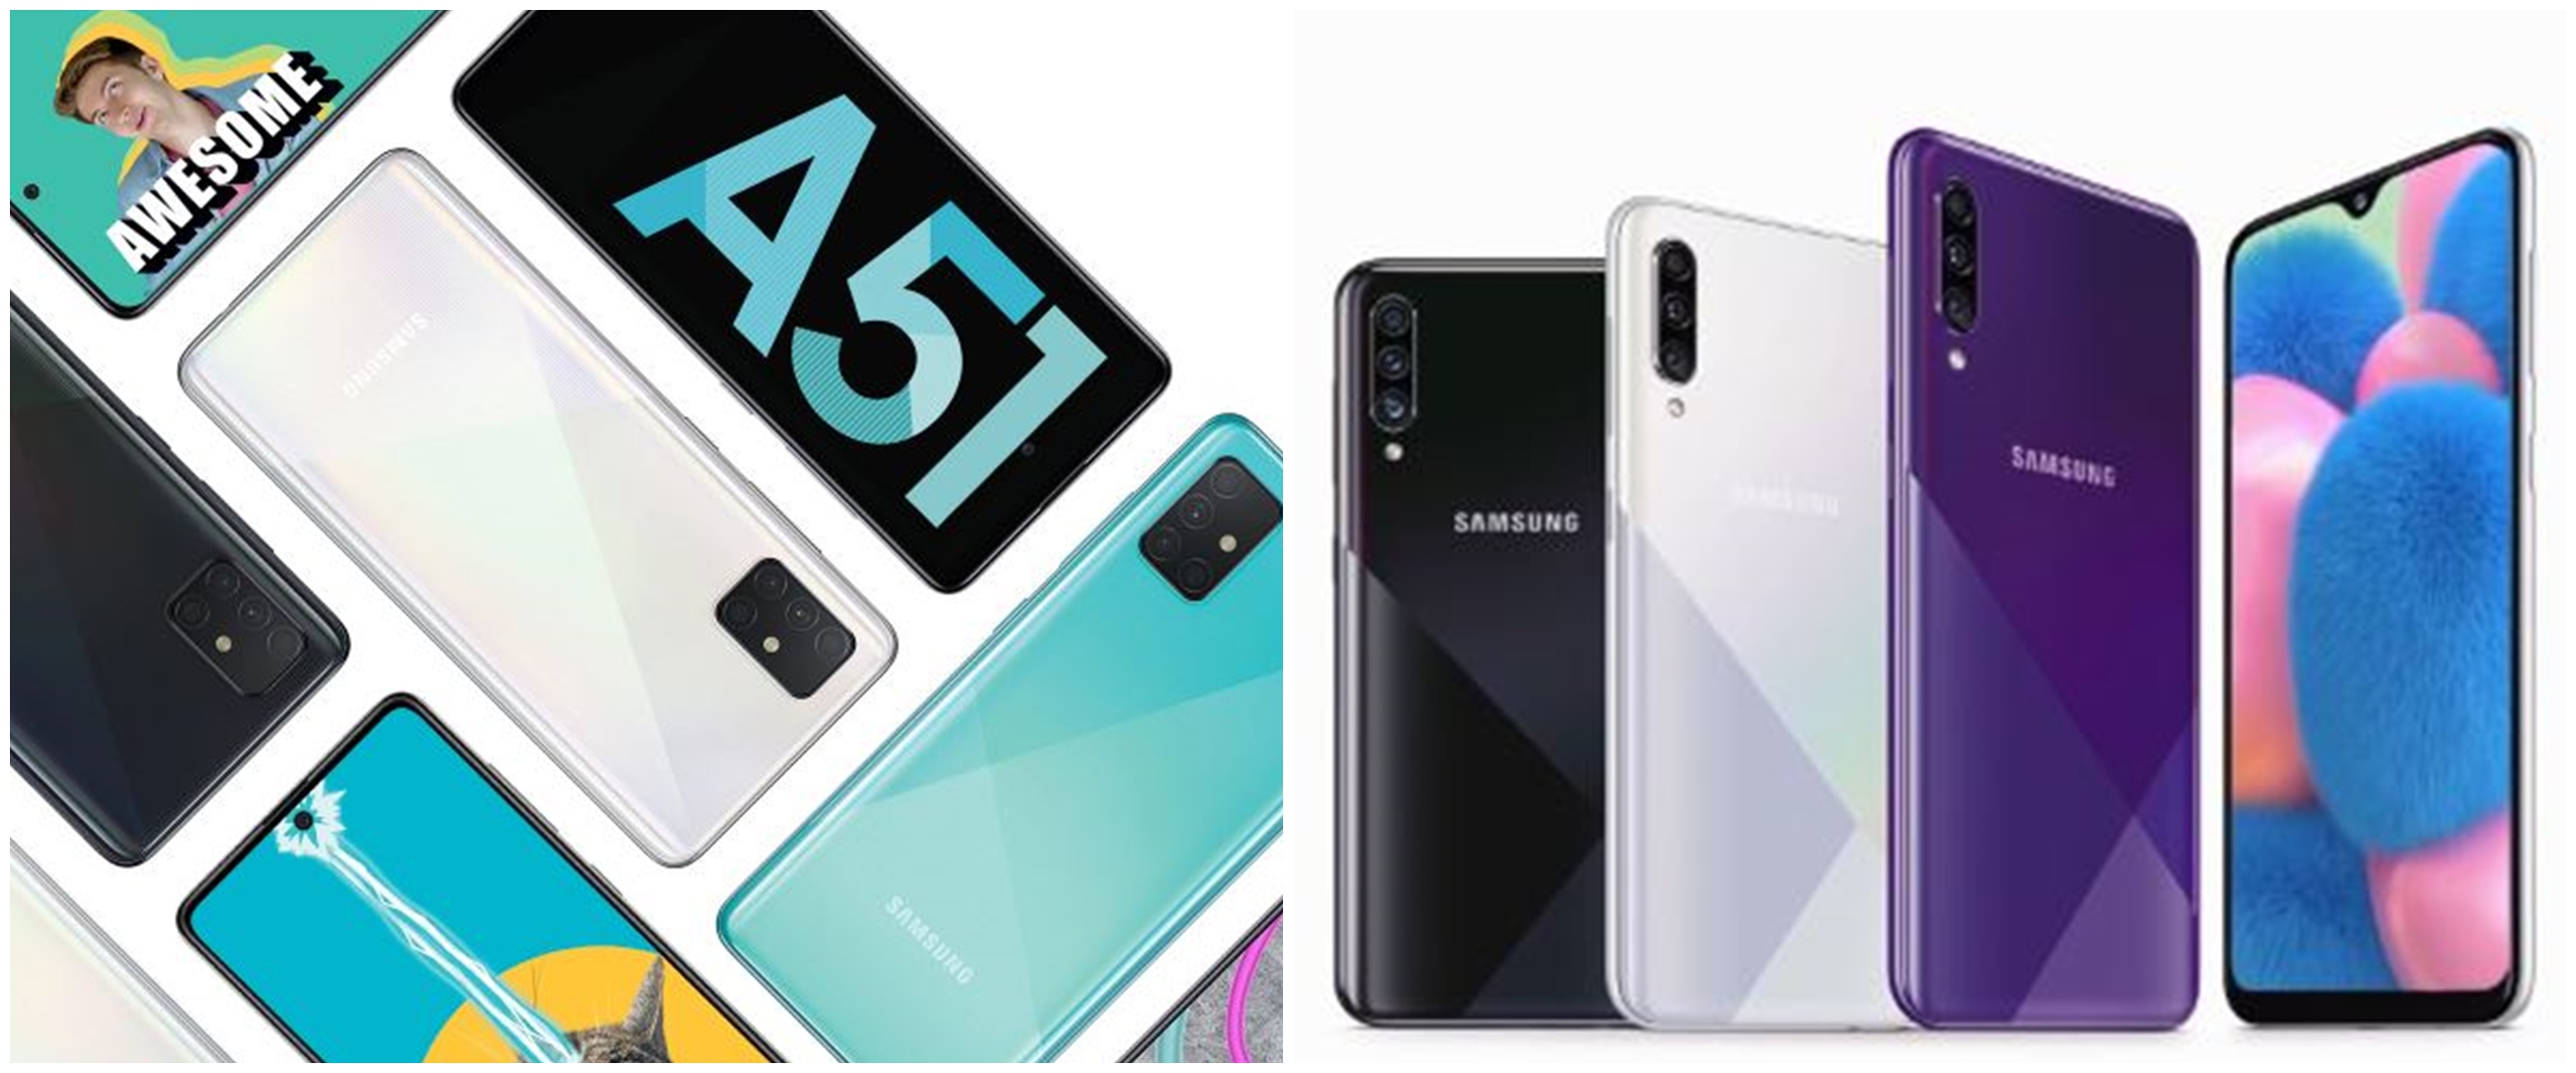 Harga Hp Samsung Galaxy A Terbaru 2020 Lengkap Dengan